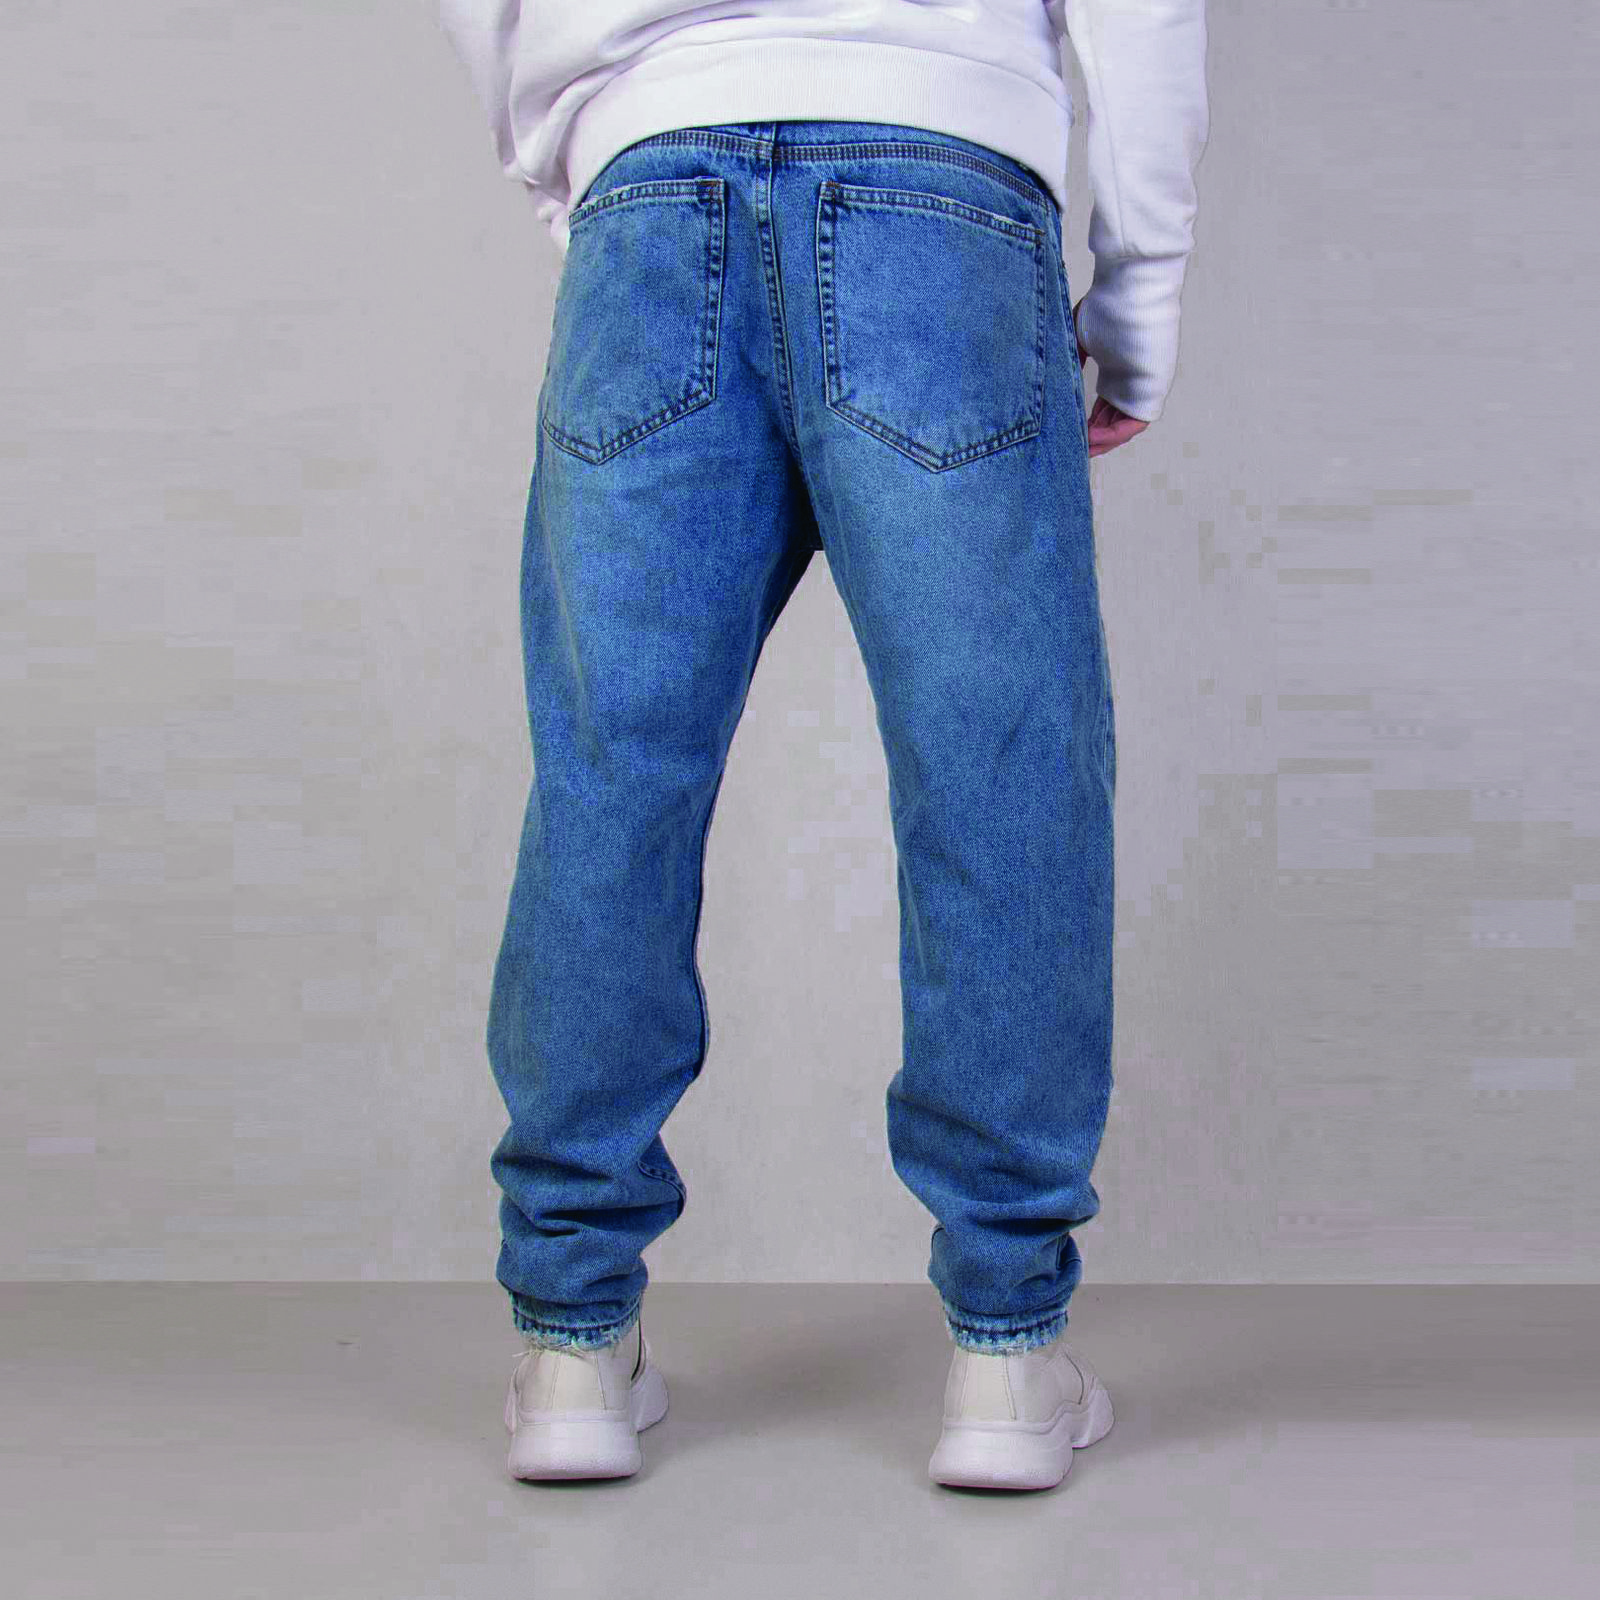 شلوار جین مردانه ان سی نو مدل مام 3 زاپ بزرگ 61 رنگ آبی -  - 3